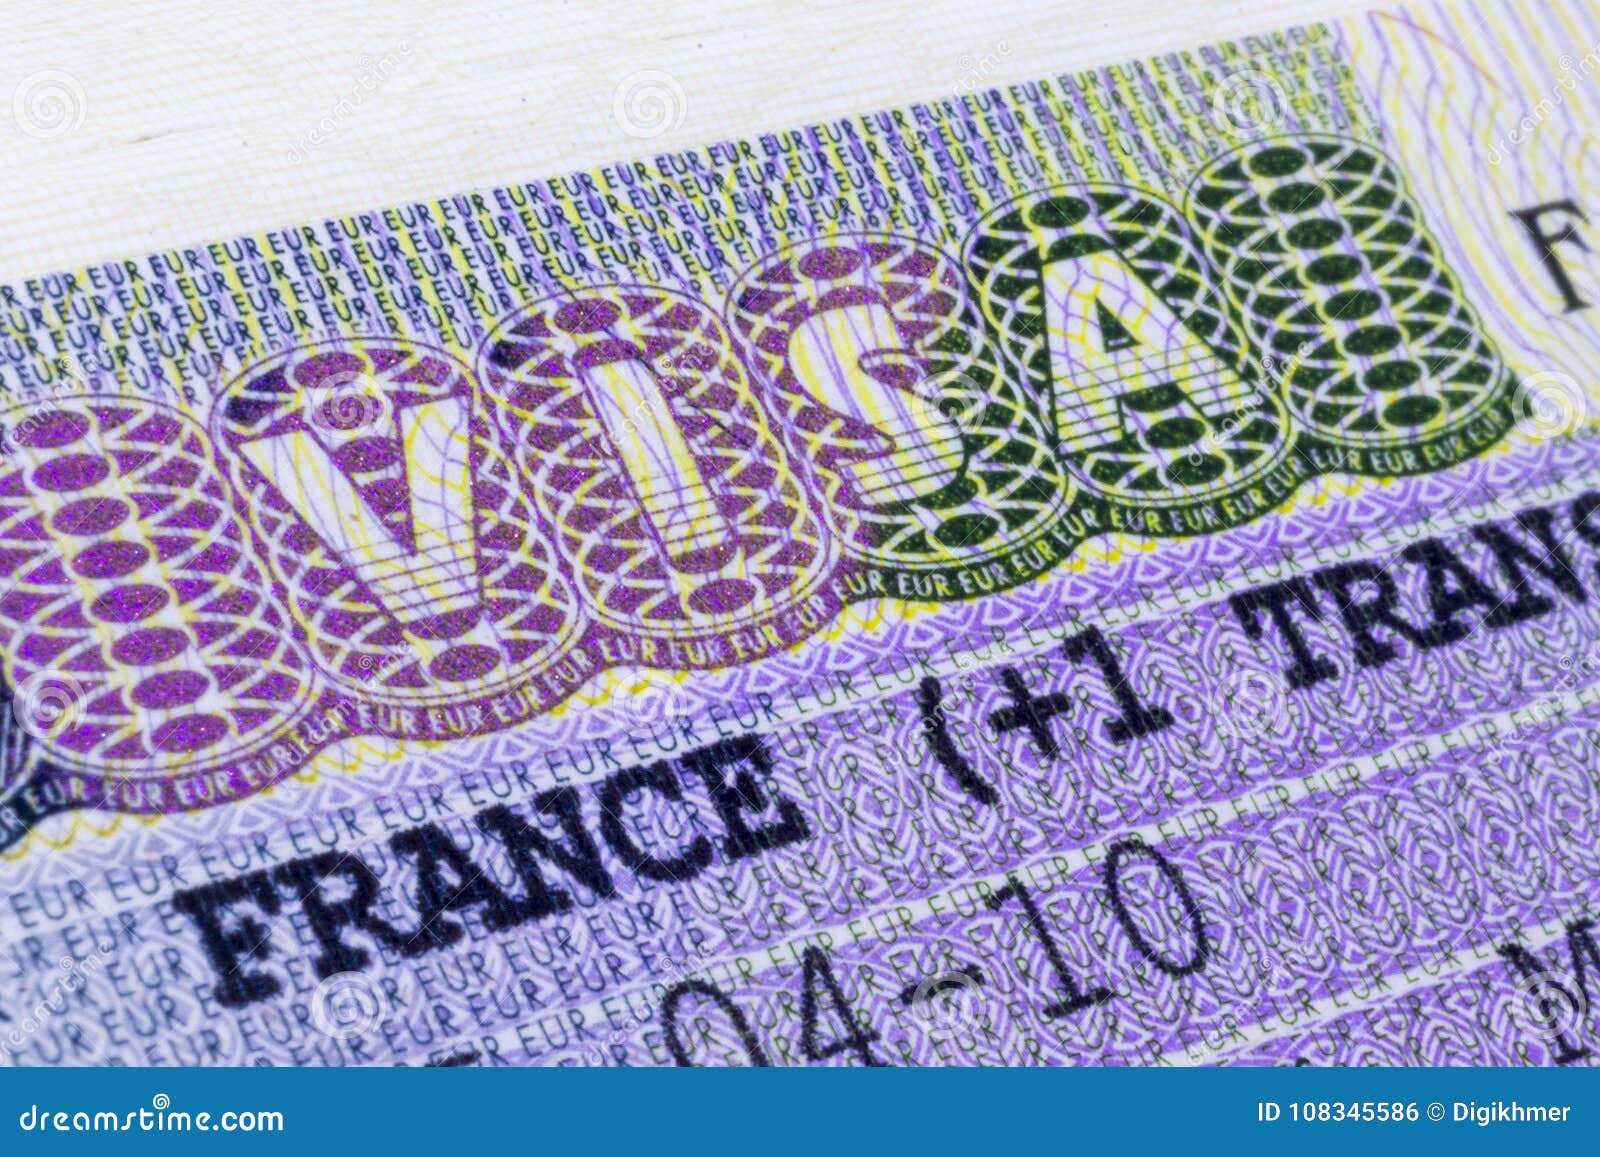 Unduh 66 Koleksi Background Foto Visa Schengen Gratis Terbaru